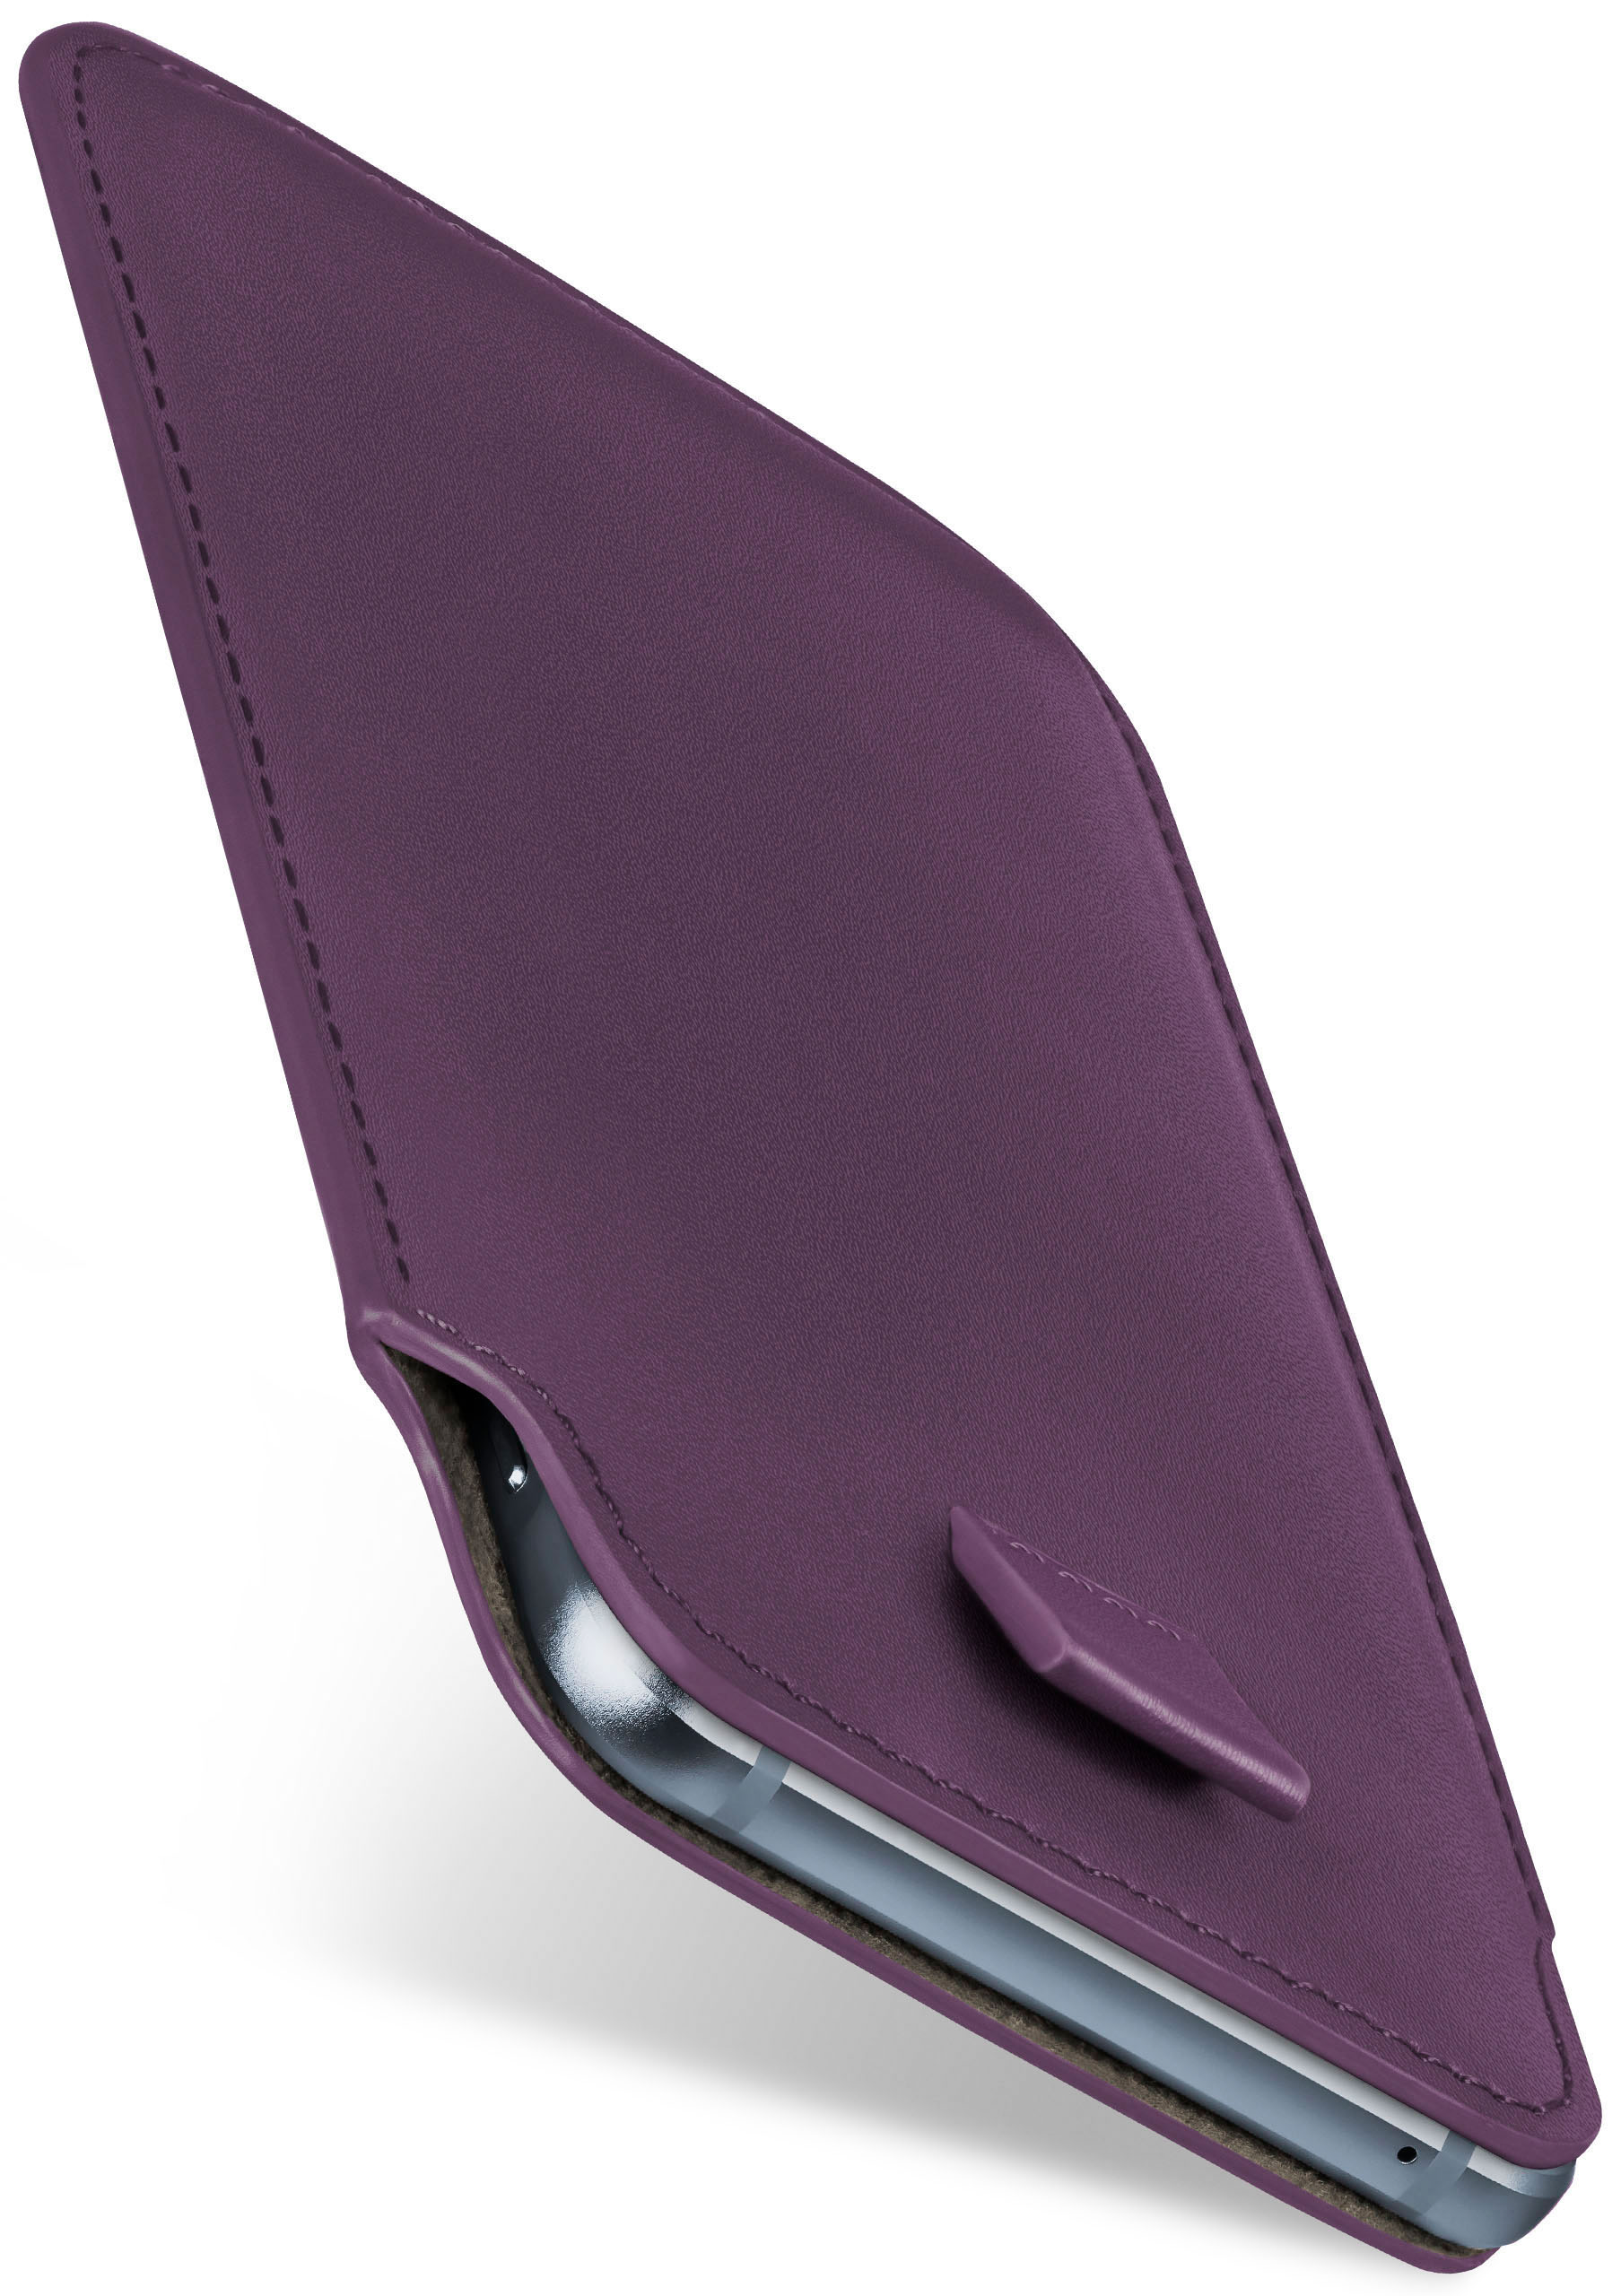 MOEX Slide Indigo-Violet Cover, Full Case, Pixel 3, Google